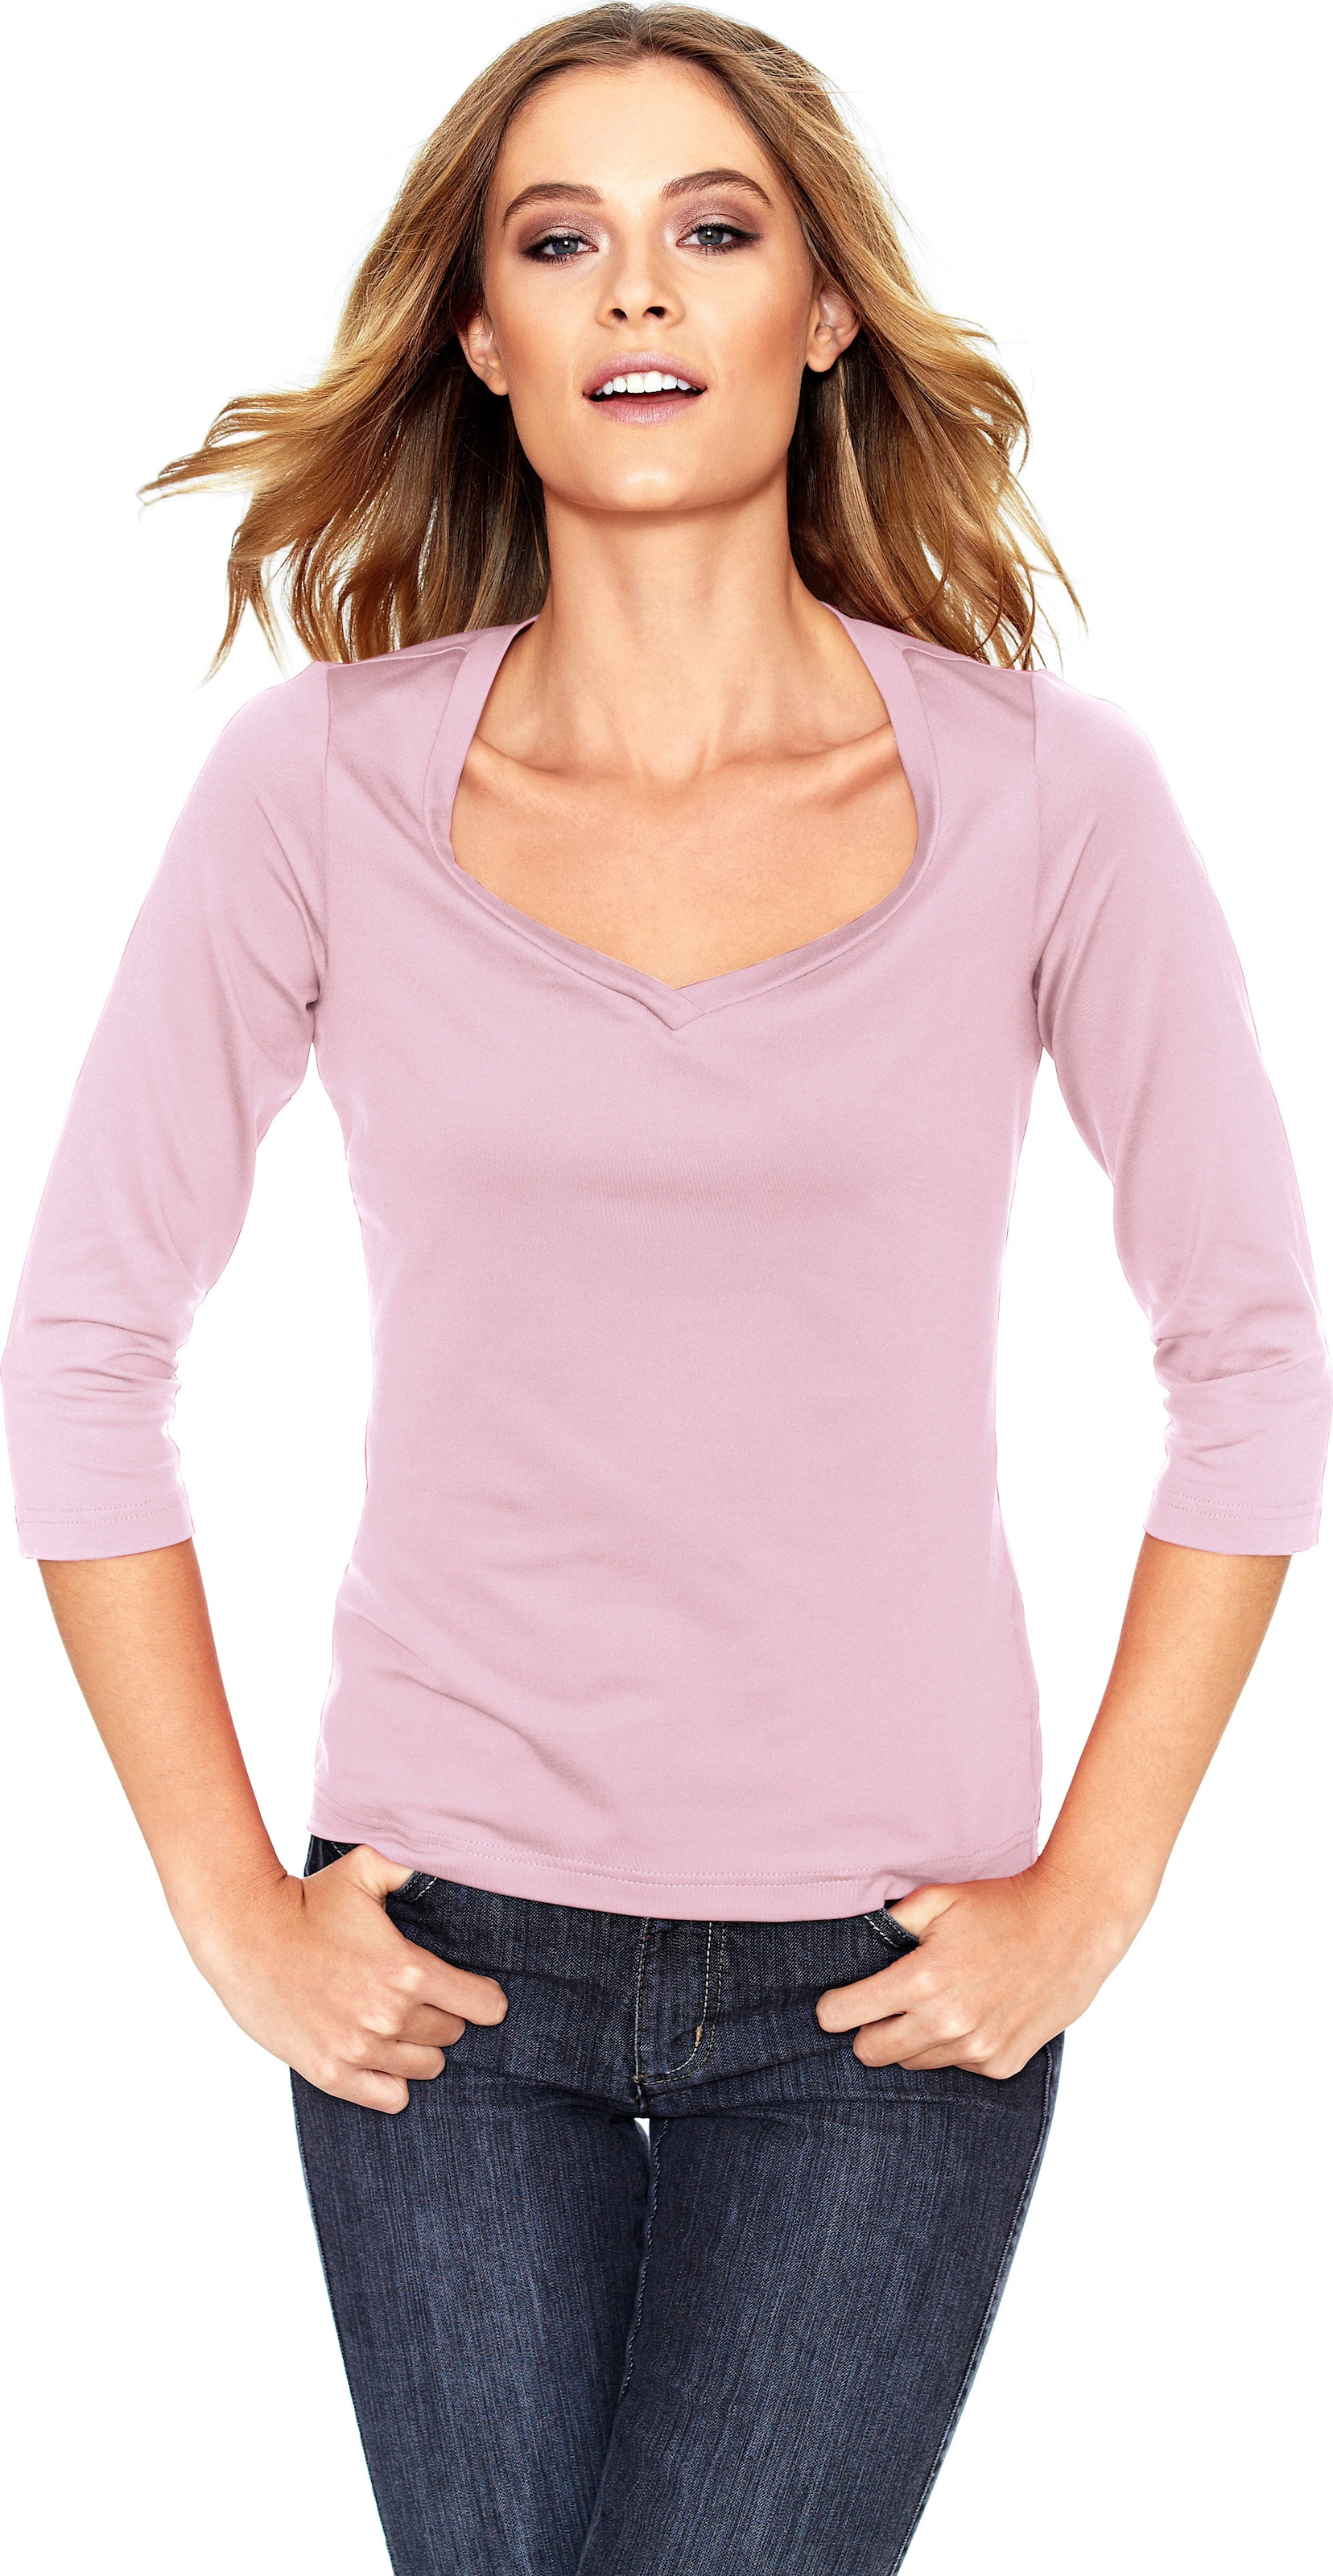 Mit Herz günstig Kaufen-Shirt in rosé von heine. Shirt in rosé von heine <![CDATA[Shirt Femininer Kombi-Style aus Tactel, in angenehmer Stretch-Qualität. Mit hoher Farbbrillanz und leichtem Glanz. Figurbetont, mit Herzausschnitt und 3/4-Arm.]]>. 